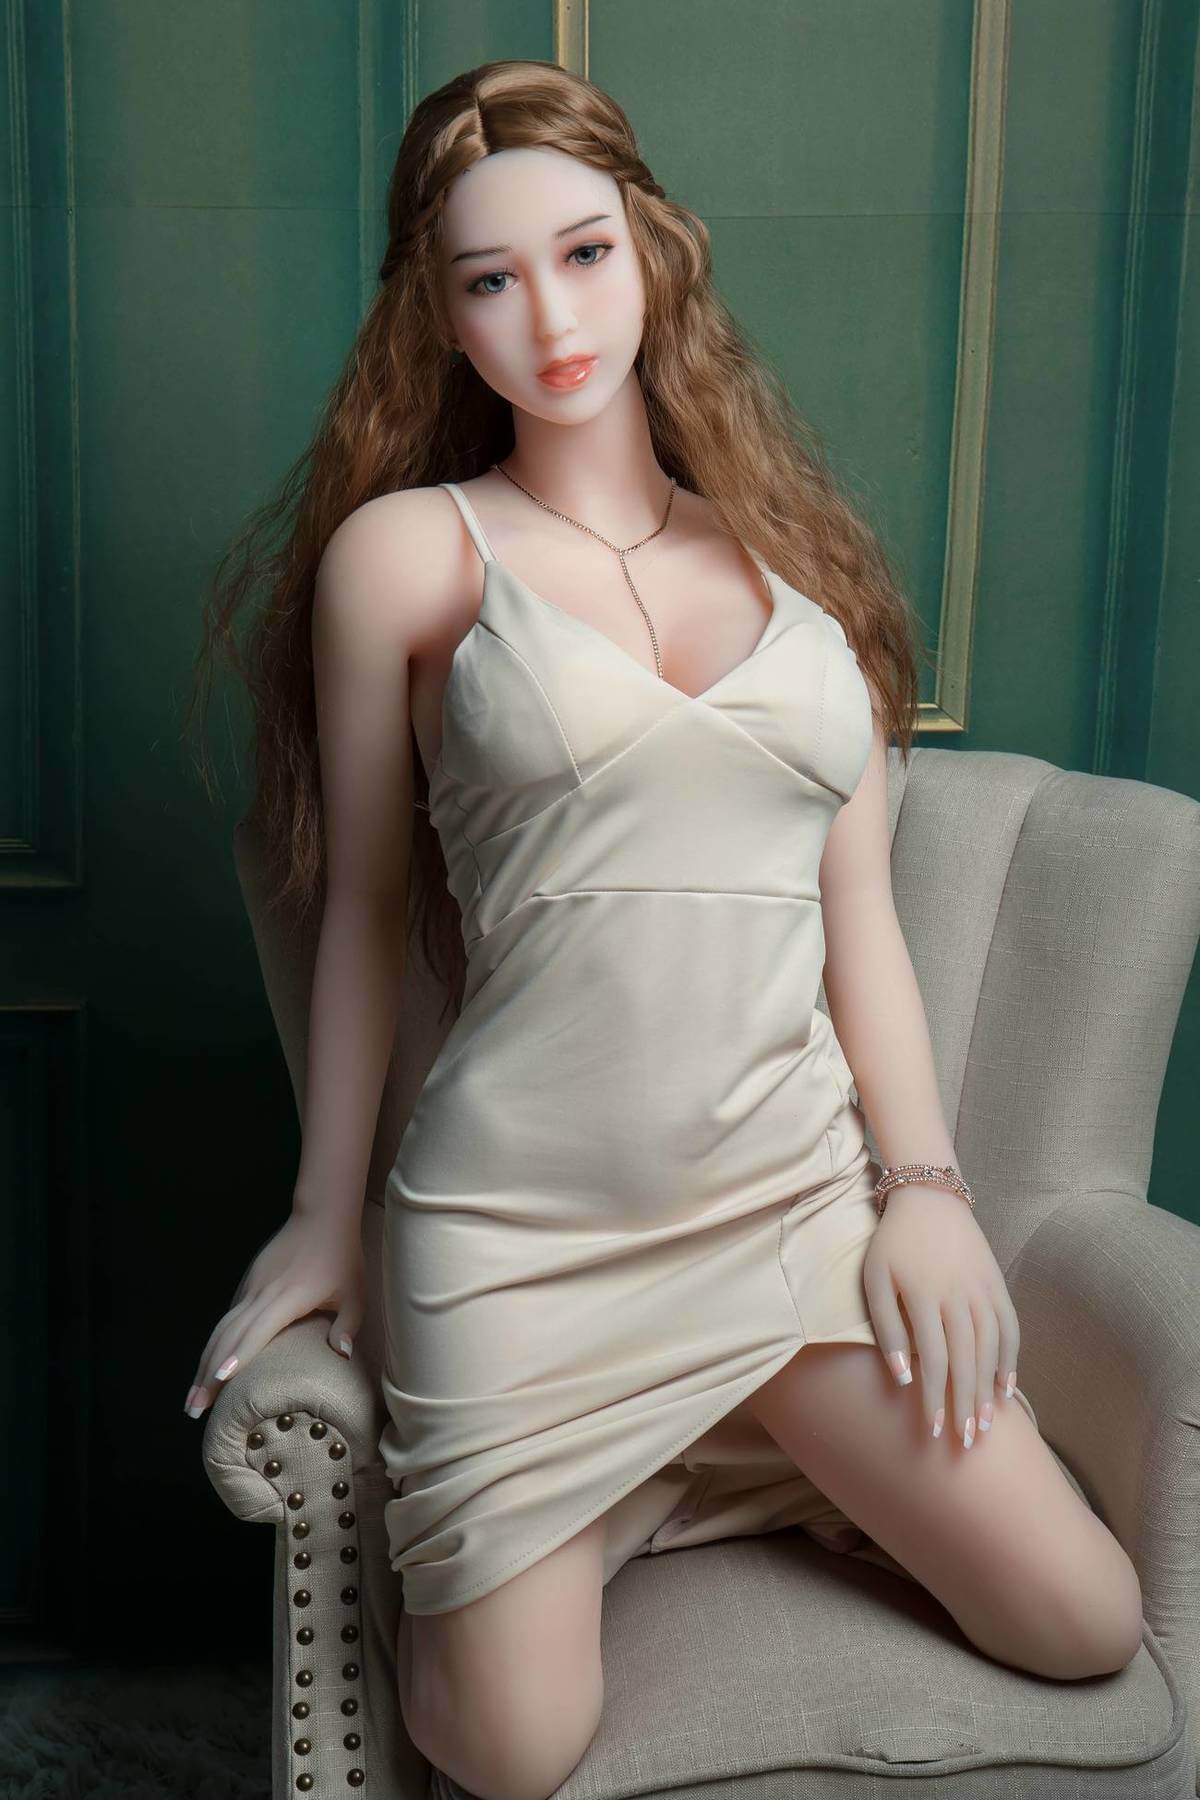 Ασιατική ξανθιά ώριμη σεξ κούκλα - Ιουλιέτα